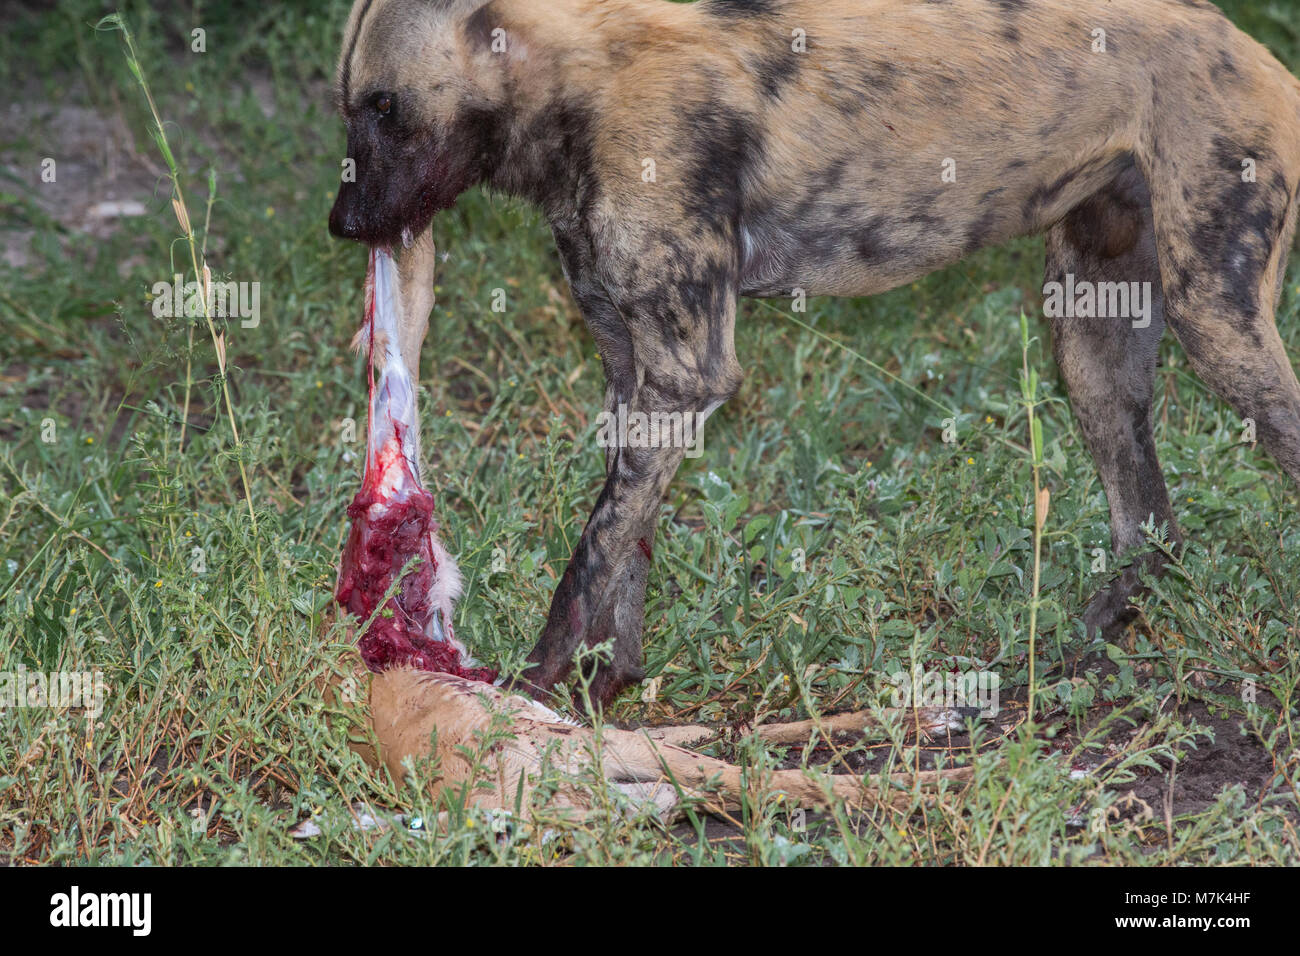 Chien de chasse sauvage d'Afrique (Lycaon pictus). L'écorchage Antilope Impala corpse, révélant la chair sanglante, maintenant le corps avec les pieds avant. Banque D'Images